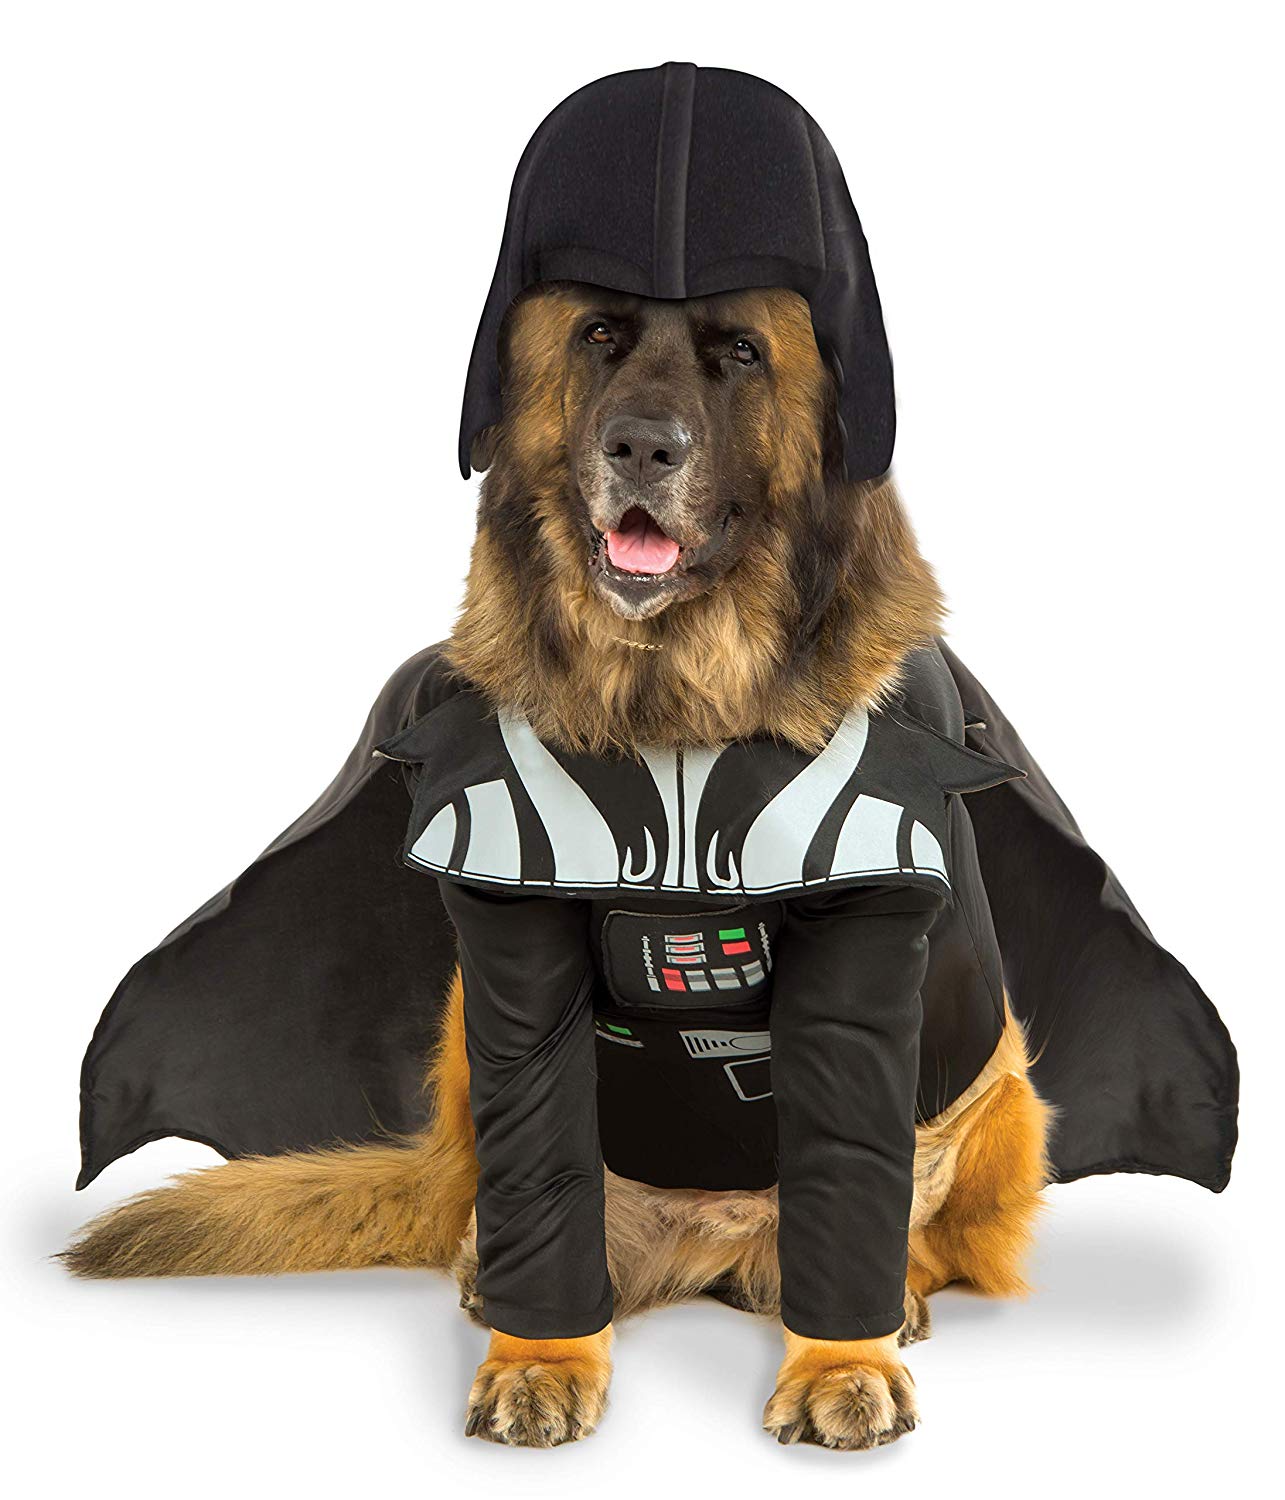 German Shepherd in Darth Vader costume